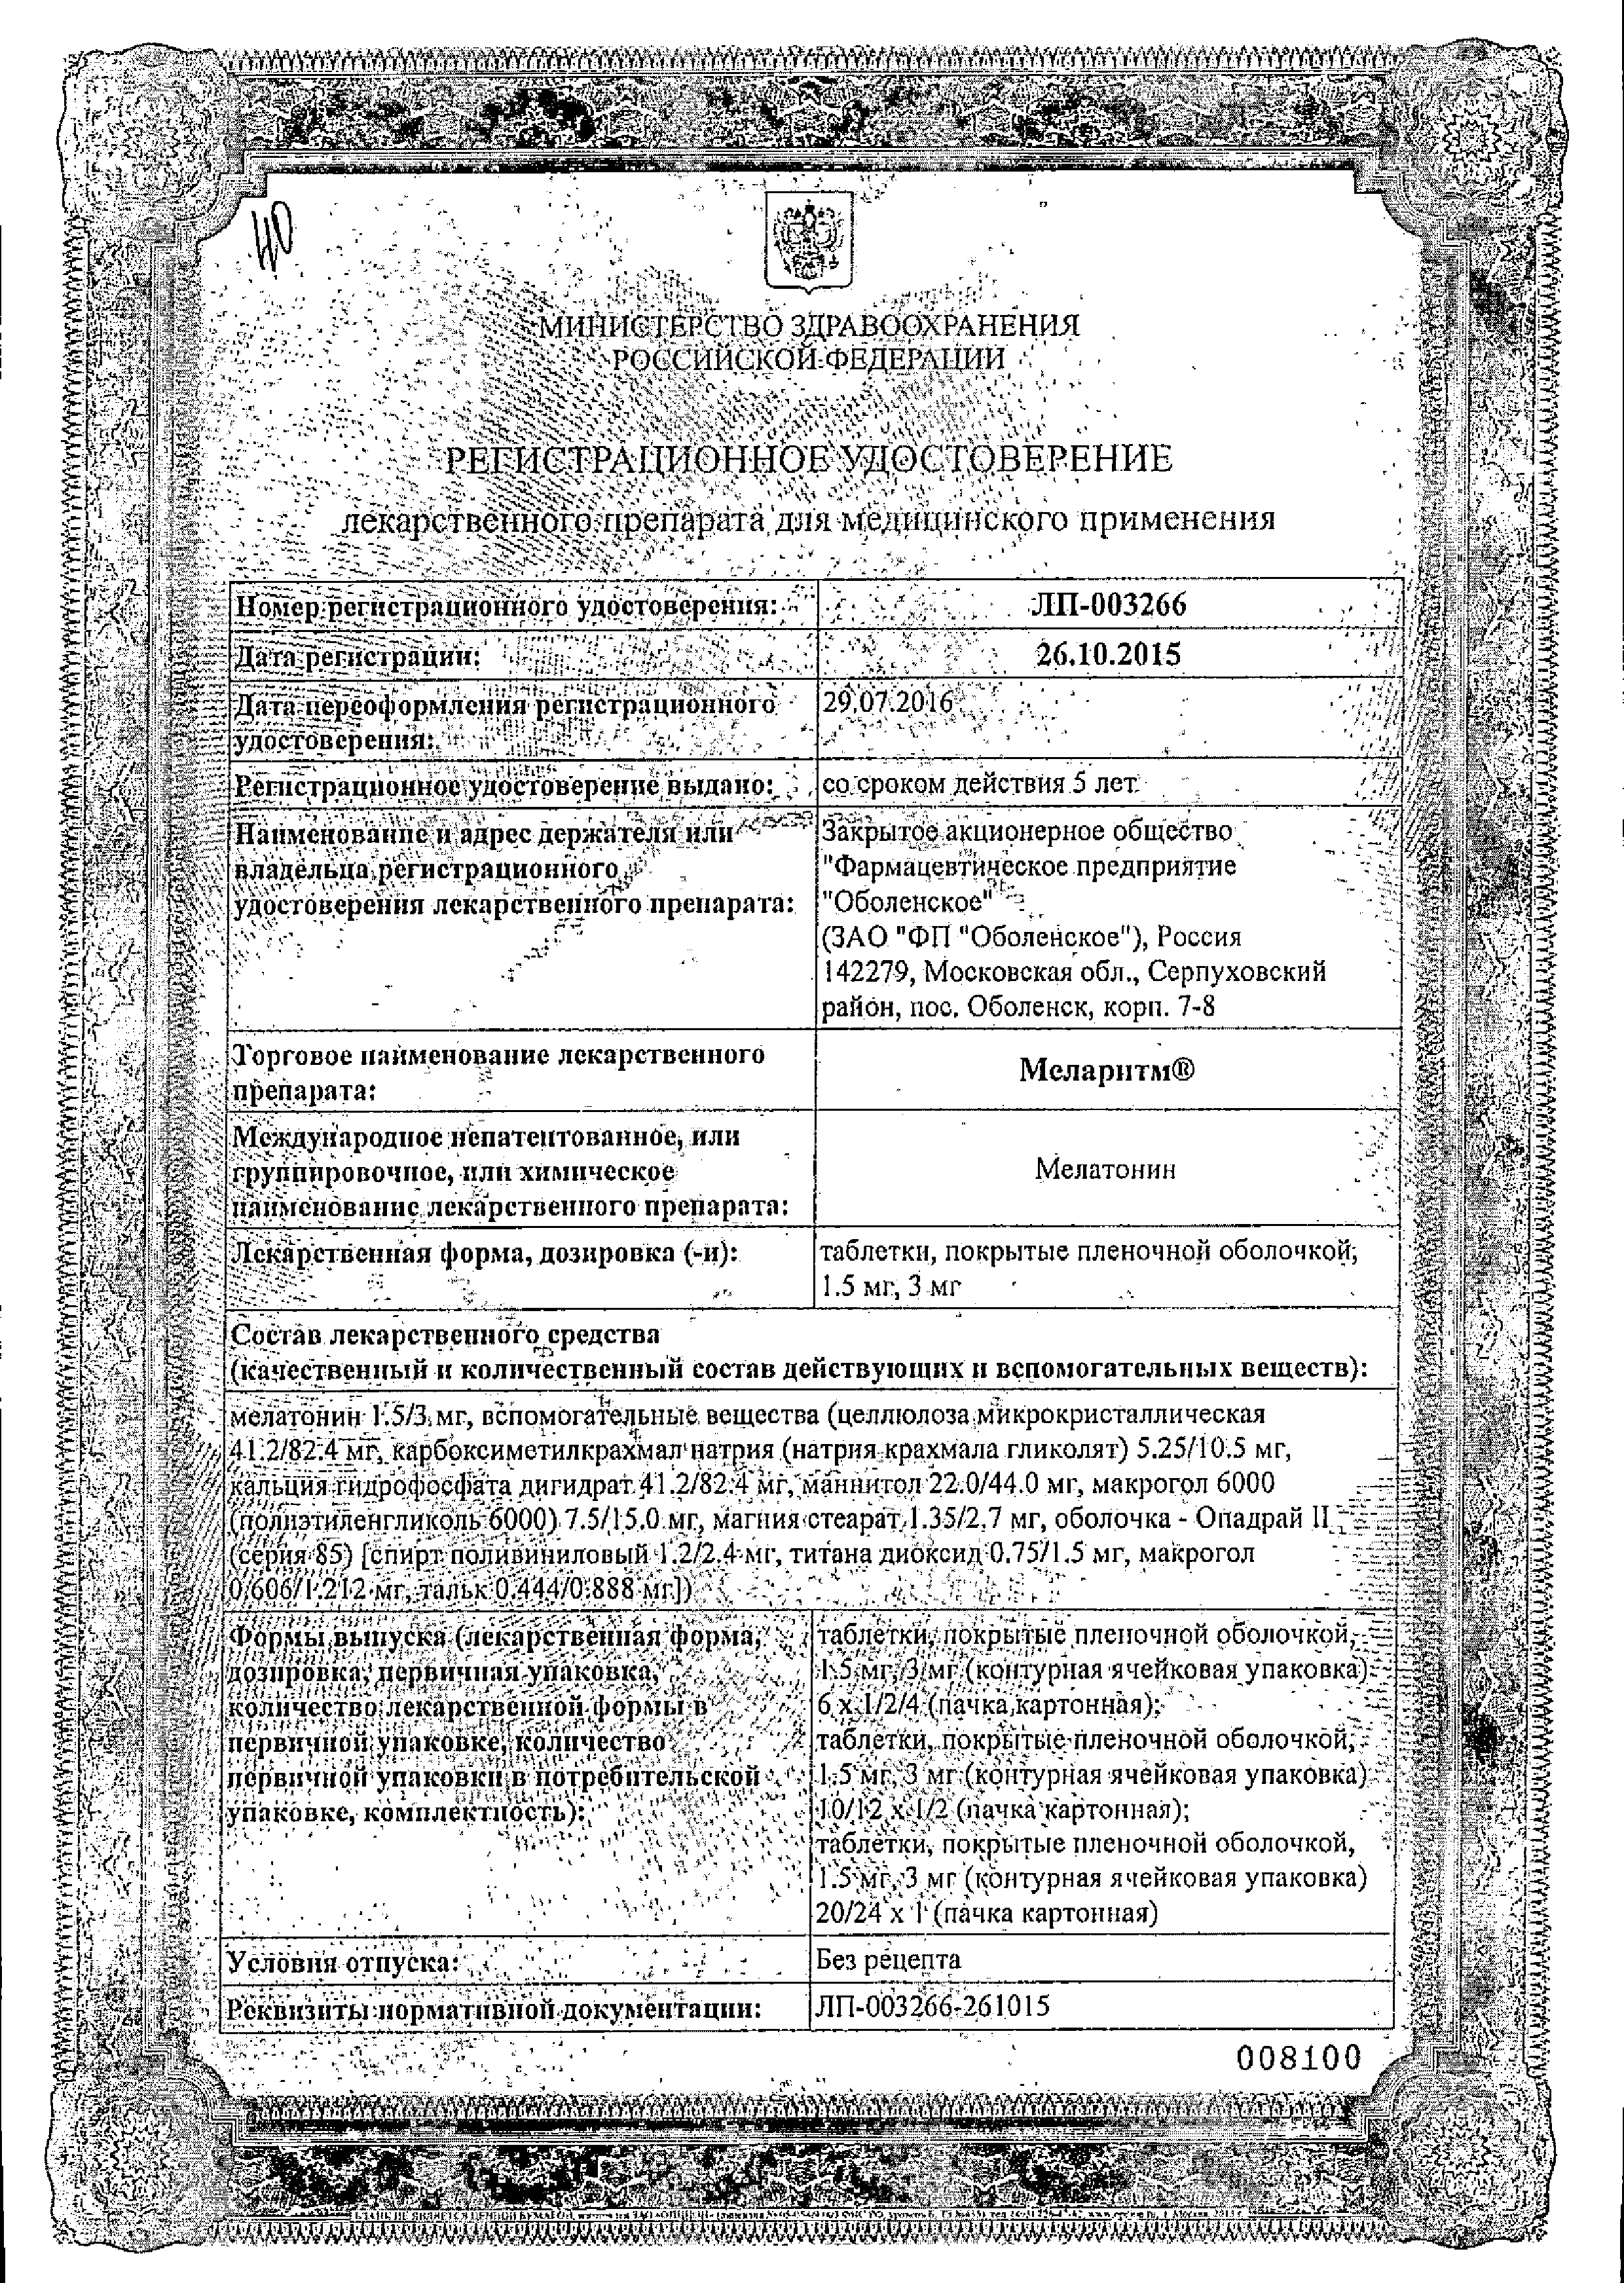 Меларитм сертификат